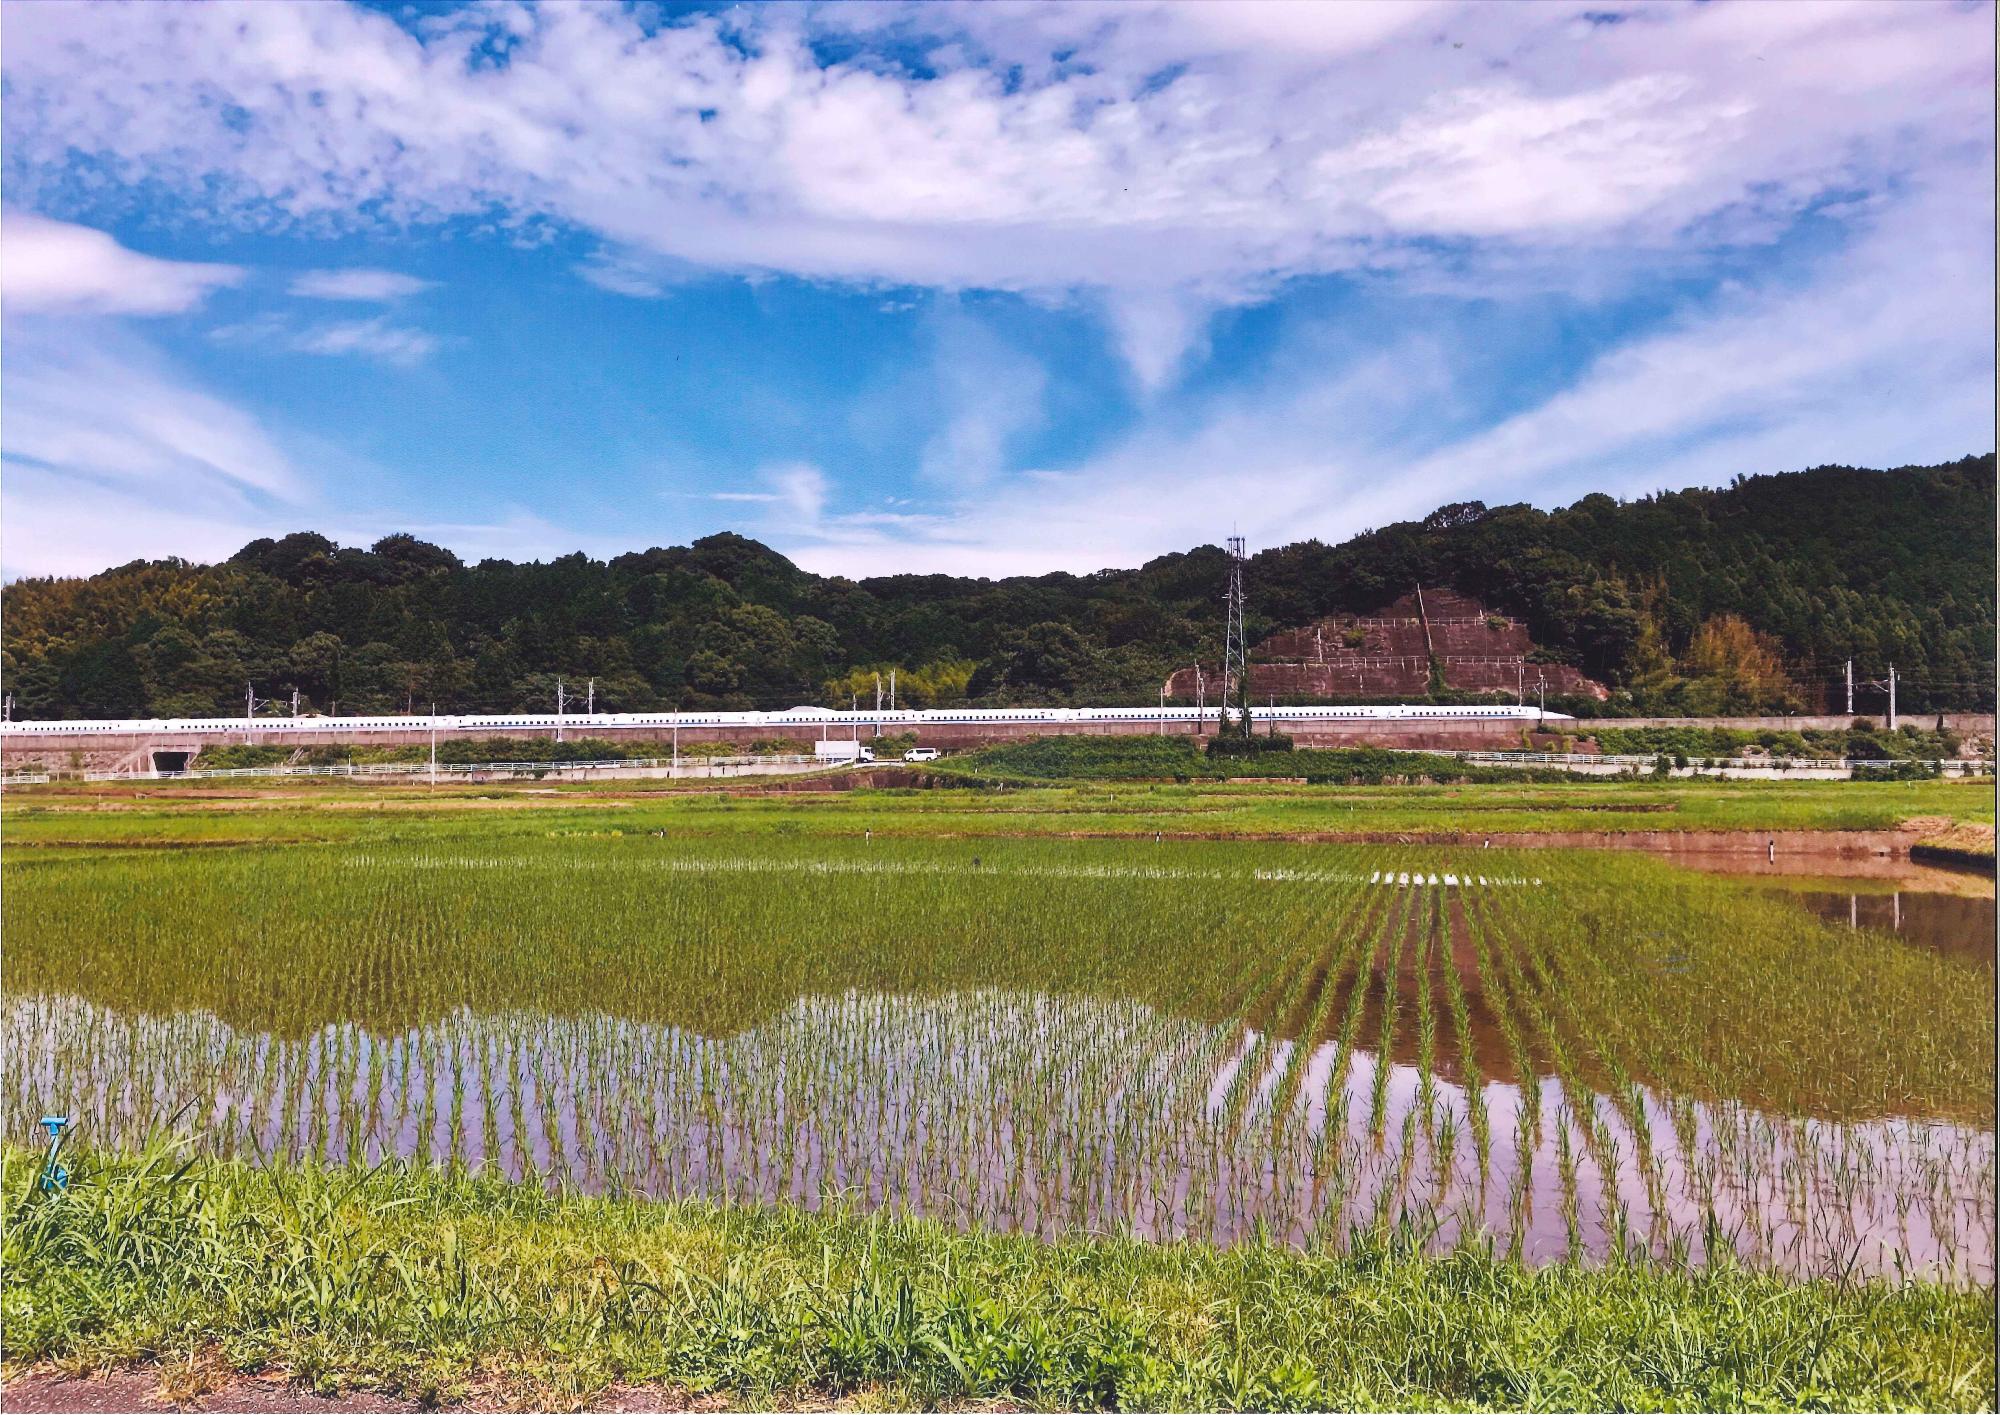 青空には薄っすらと雲が広がり、田んぼには緑の稲が植えられている風景の写真